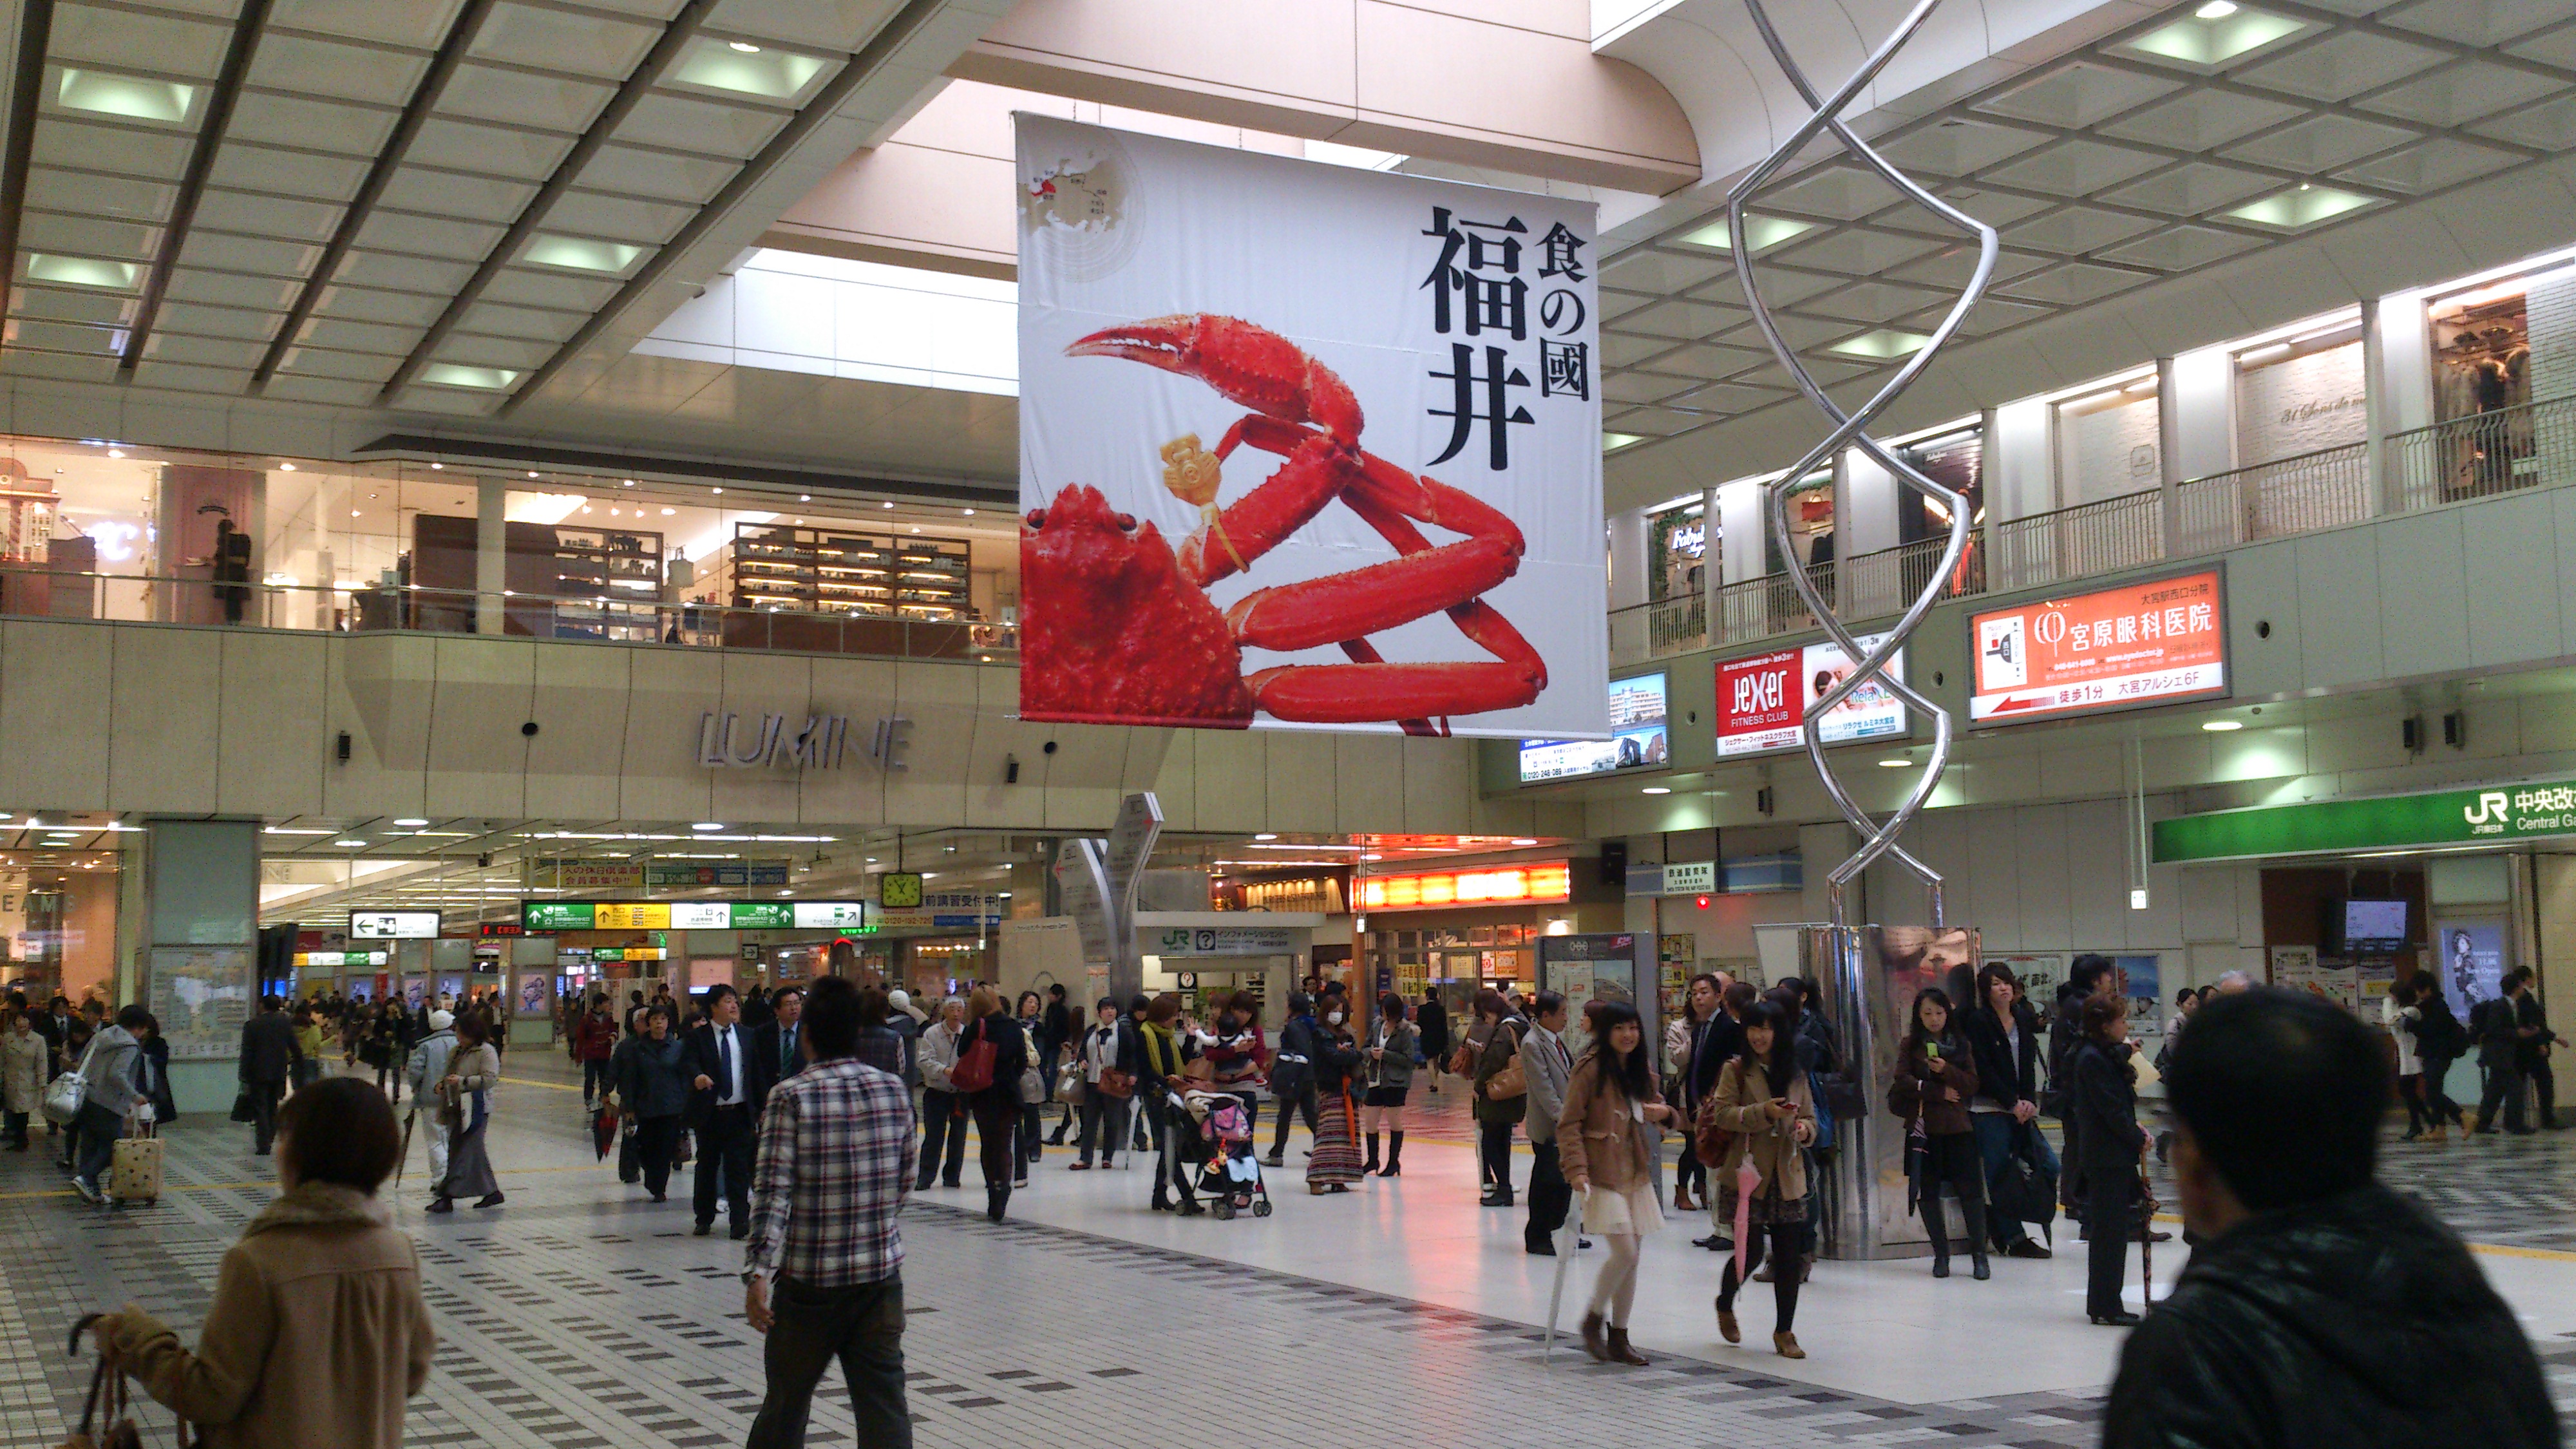 JR大宮車站宣傳福井縣的越前蟹大型廣告